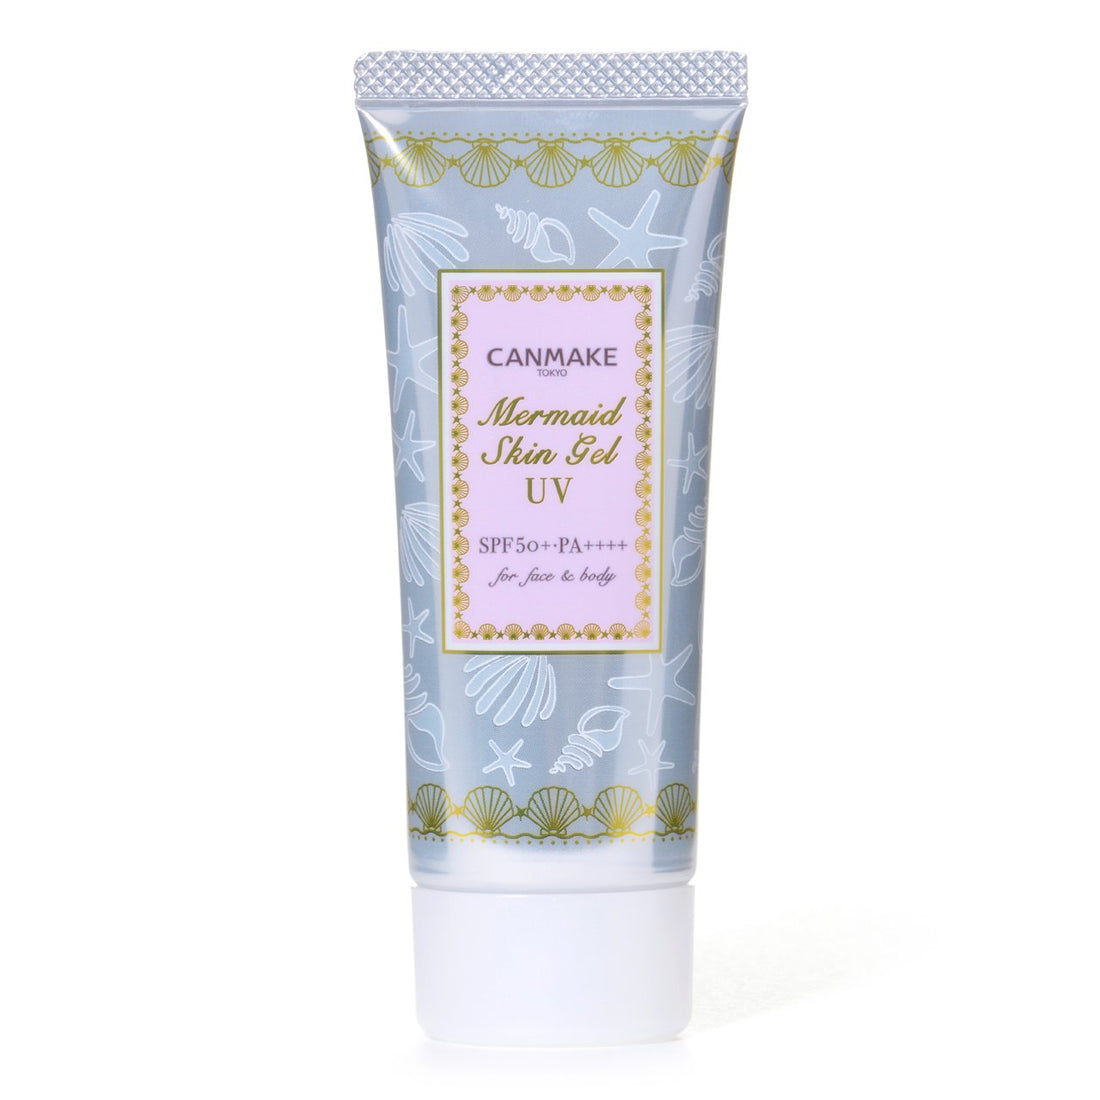 Canmake Mermaid Skin Gel UV Clear 01 SPF 50+ PA++++